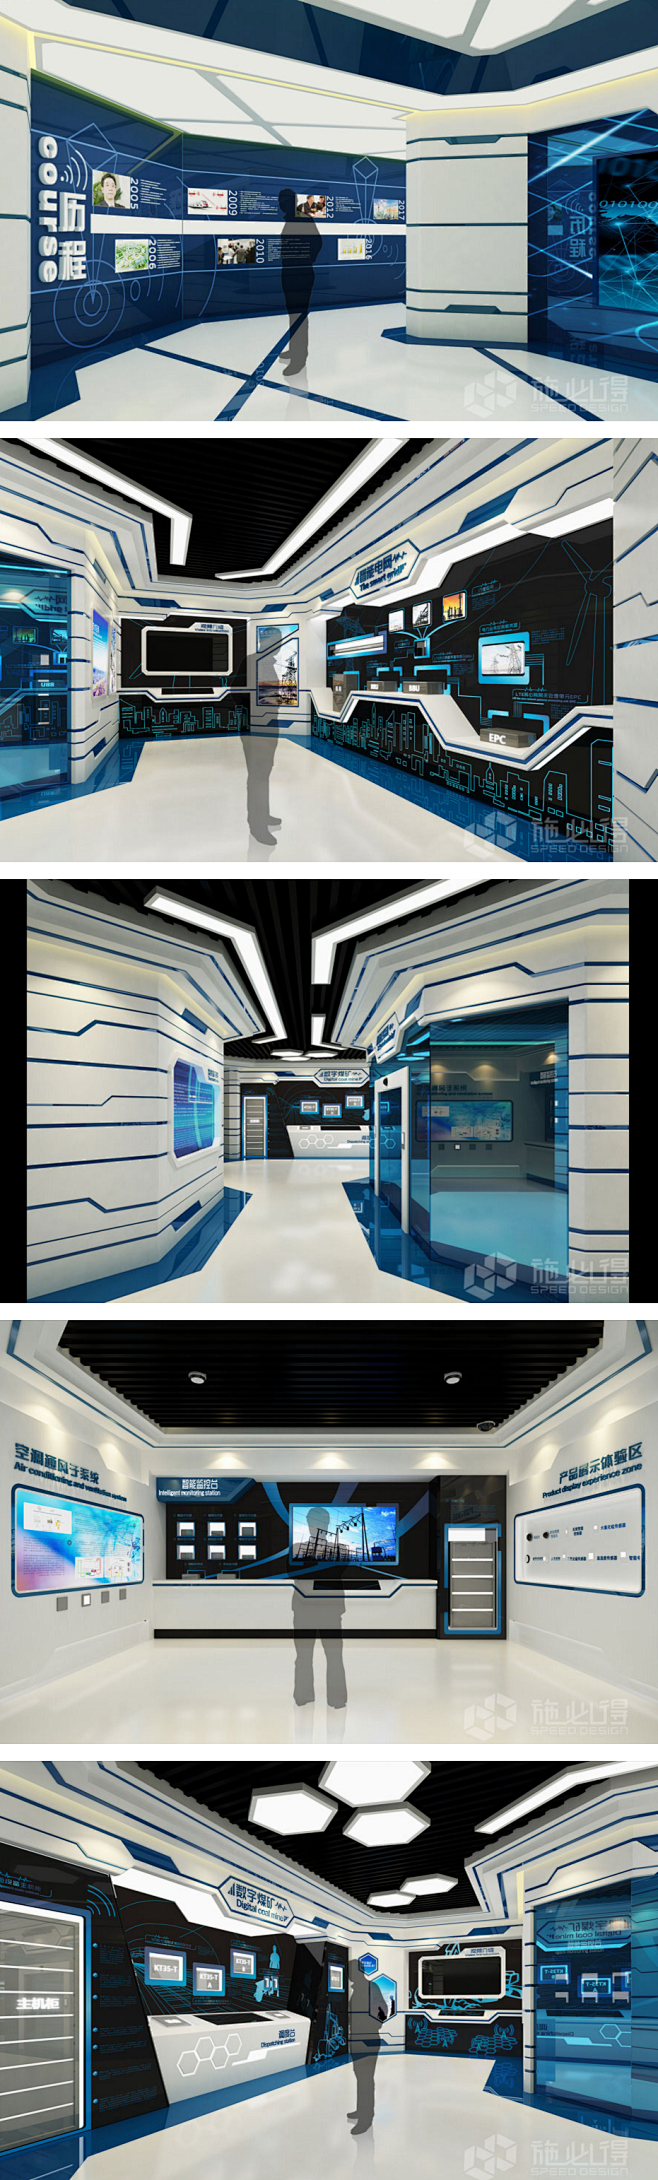 展馆设计欣赏 办公室文化墙 3D效果图 ...